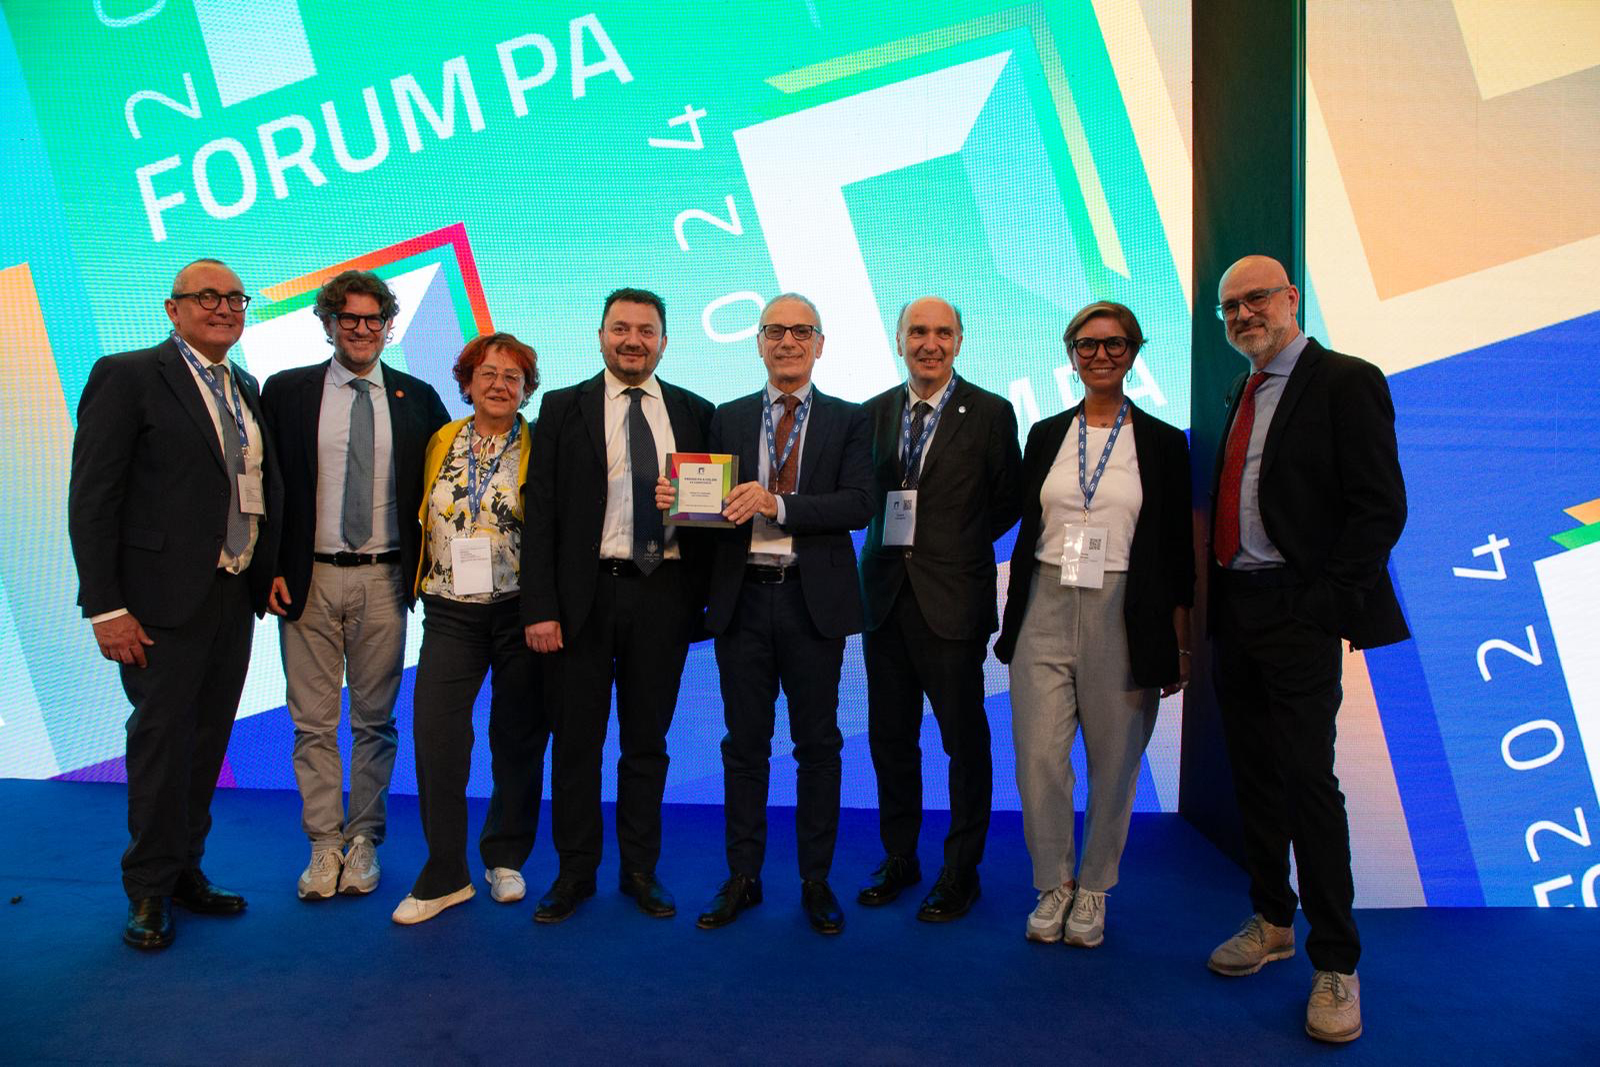 L’Università di Teramo premiata a Roma agli “Oscar” della Pubblica Amministrazione